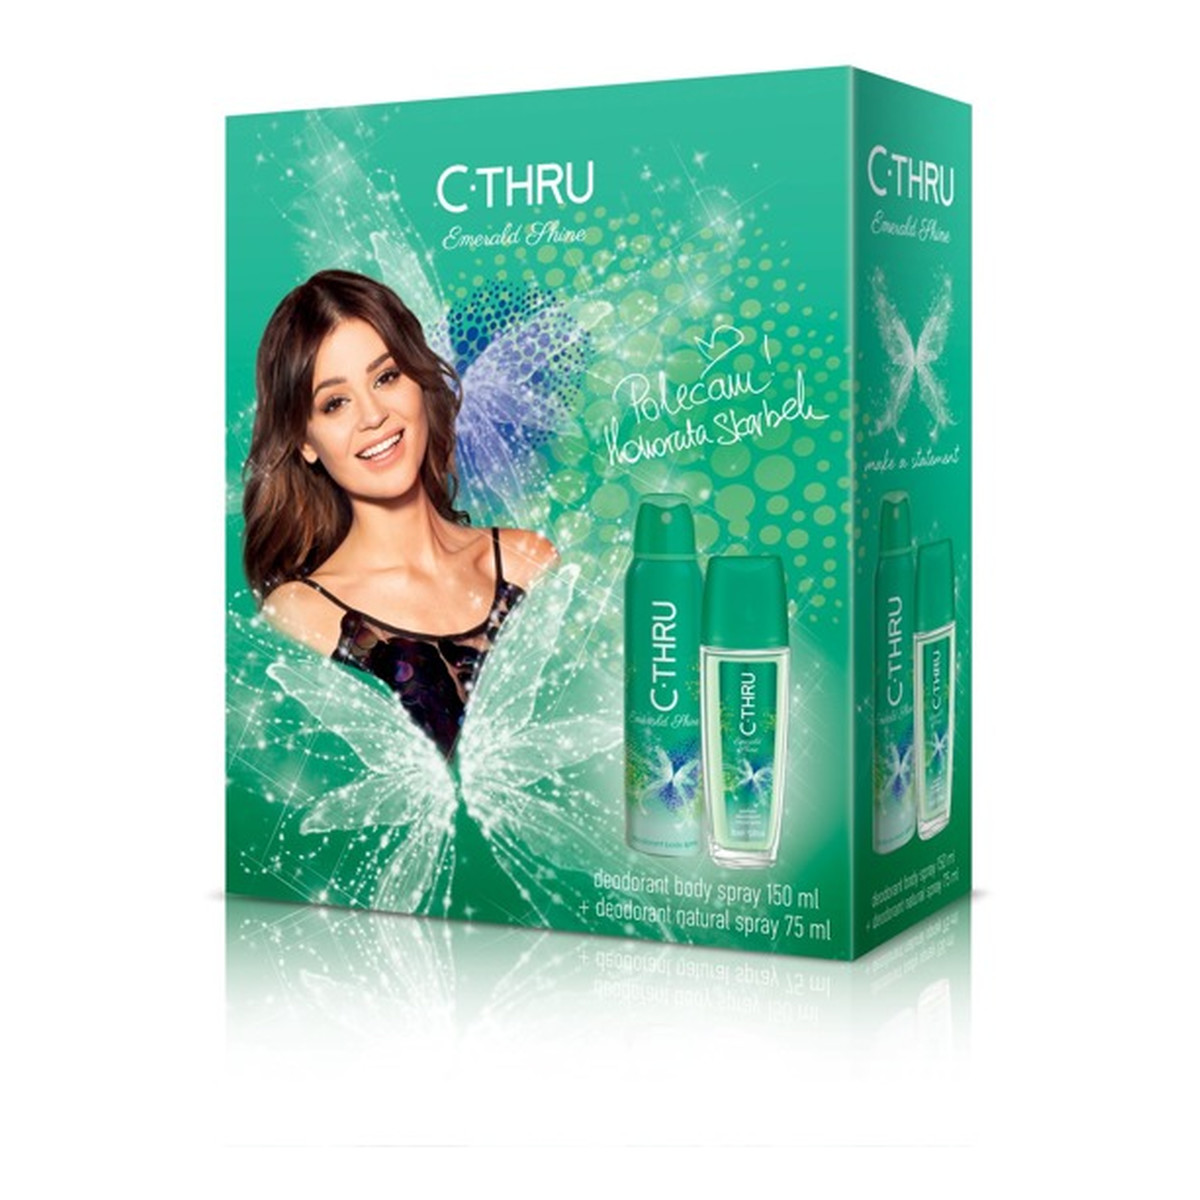 C-Thru Emerald Shine Zestaw prezentowy (dezodorant spray 150ml i dezodorant w atomizerze 75ml)